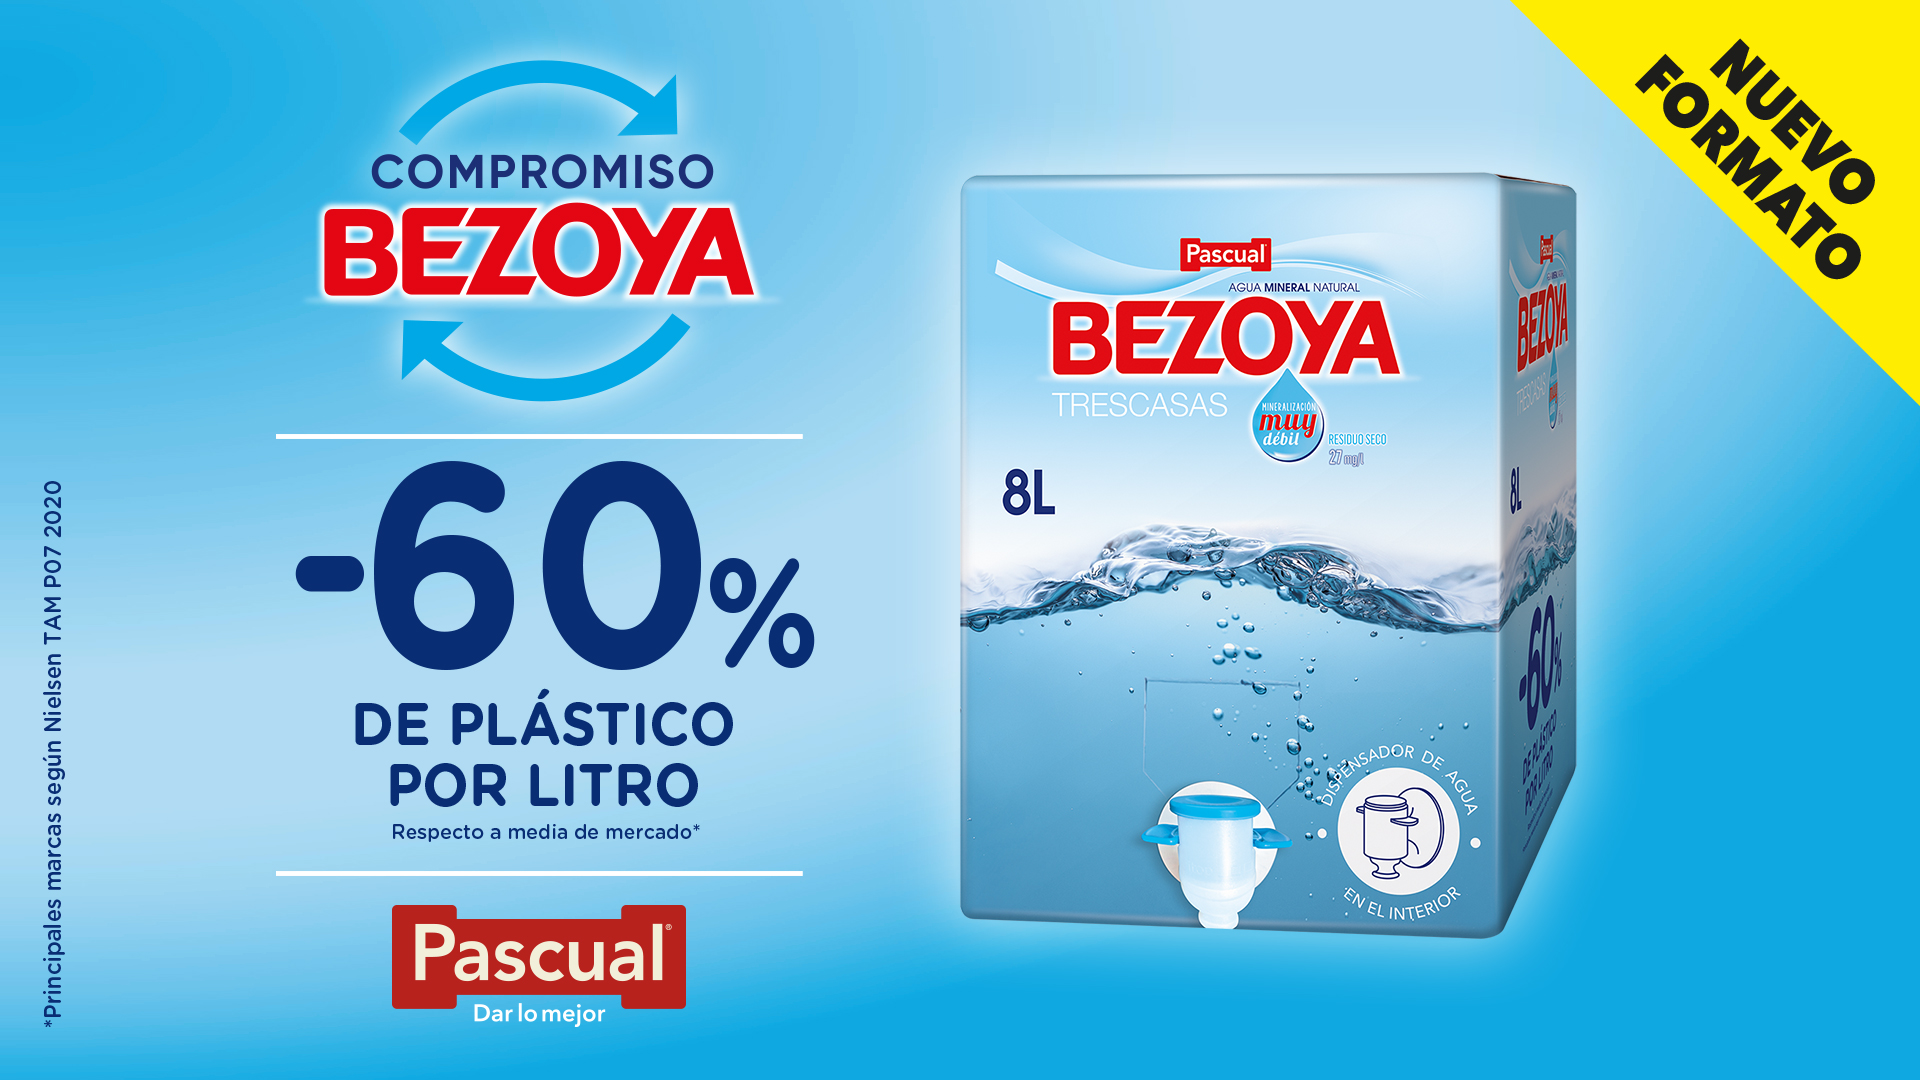 Bezoya - ¿Conoces nuestro nuevo formato #Bezoya de 8 litros? Es